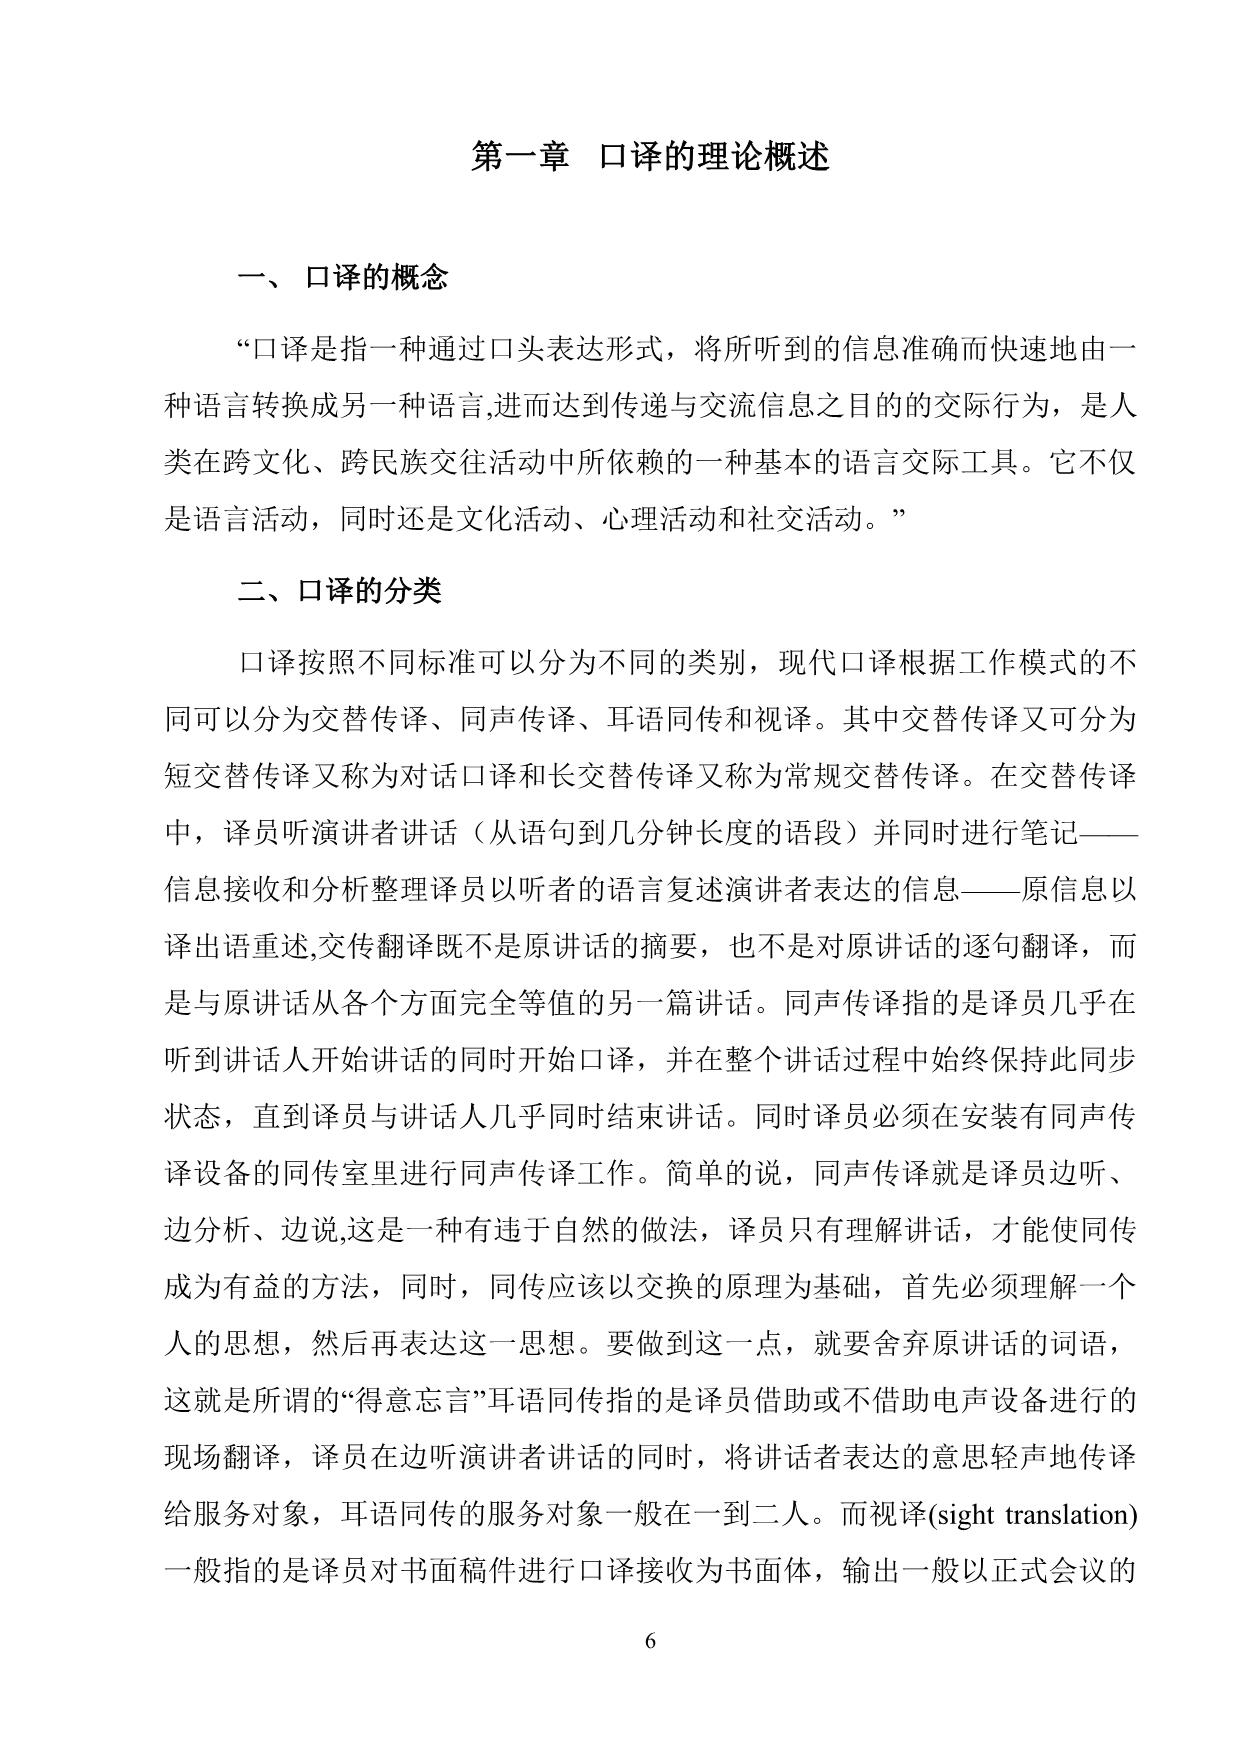 Giáo trình Phiên dịch tiếng Trung Quốc 1 trang 6